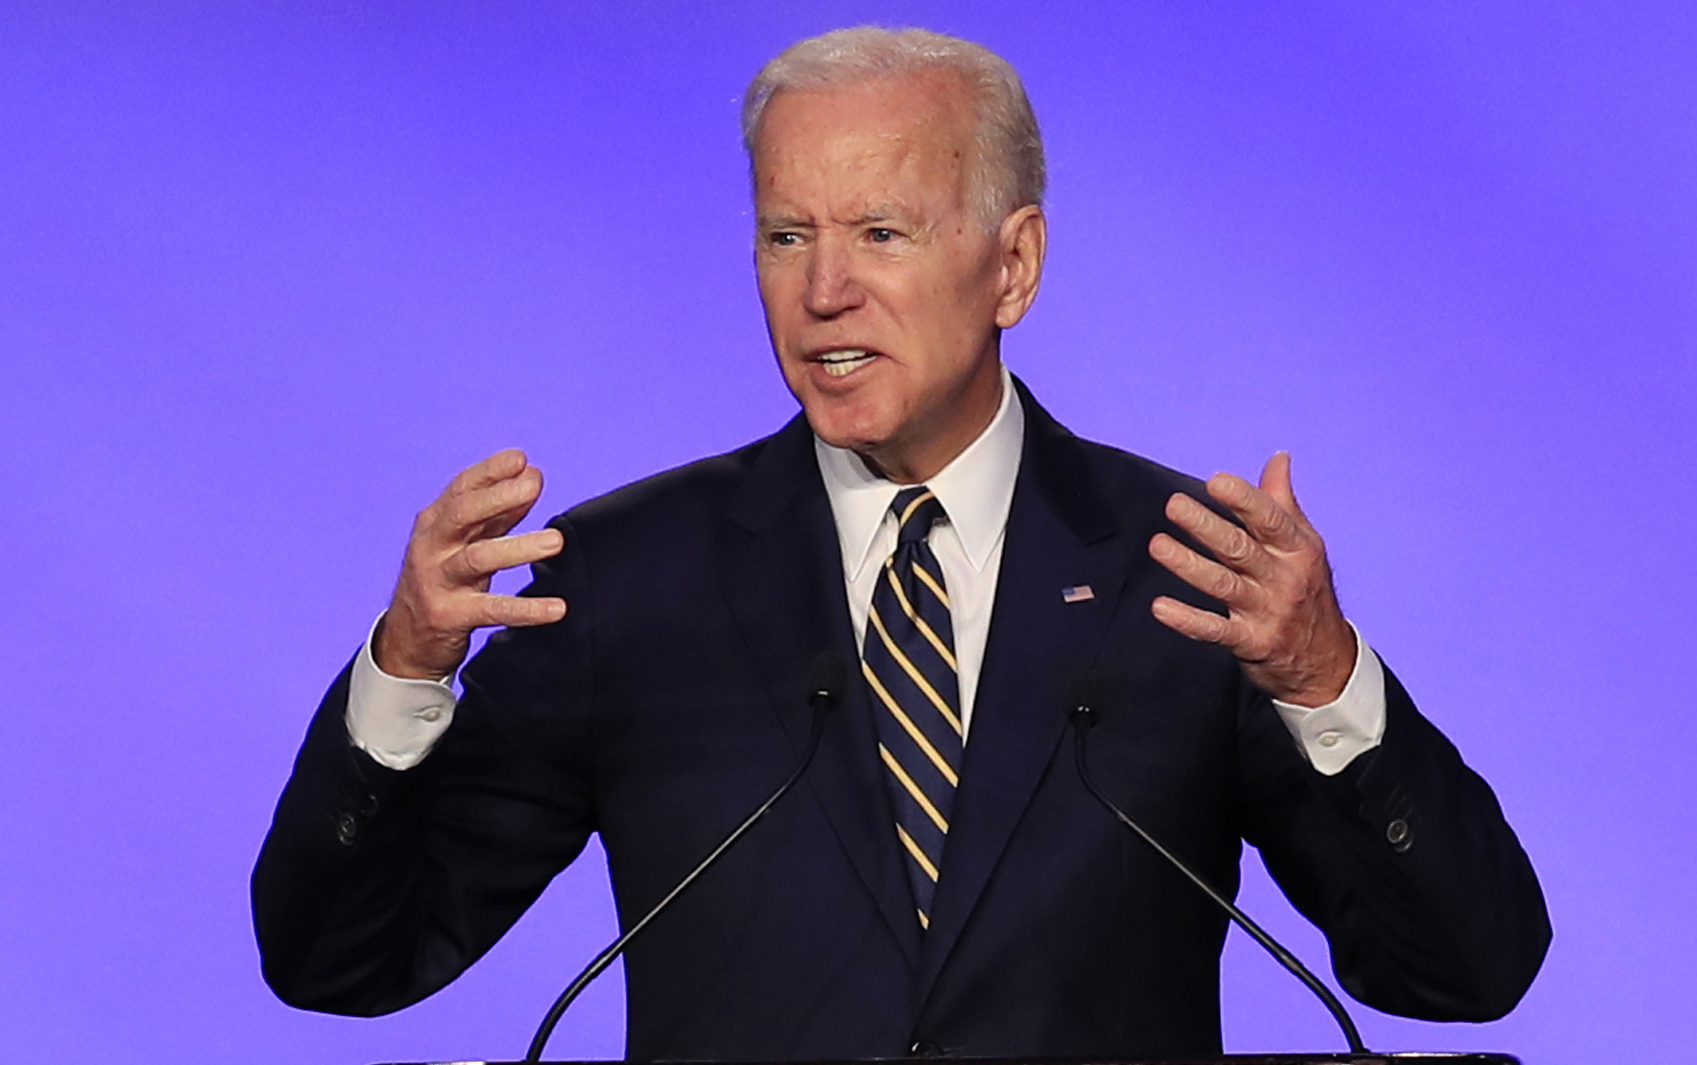 Joe Biden apuesta a que sus vínculos con la presidencia de Obama le ayudarán a convencer a los escépticos./AP